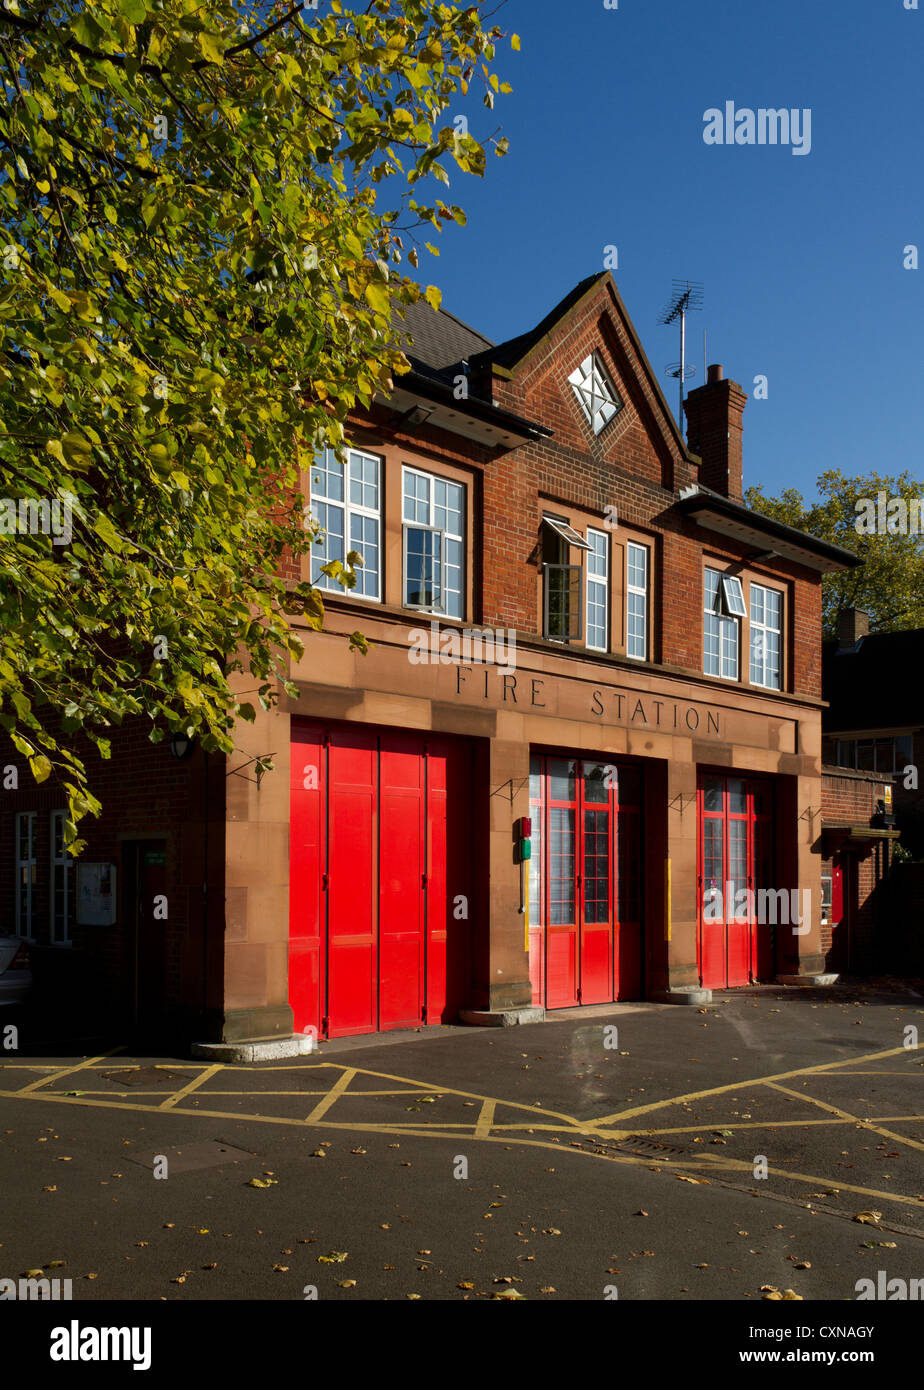 Fire Station, Mitcham, London, UK Stock Photo